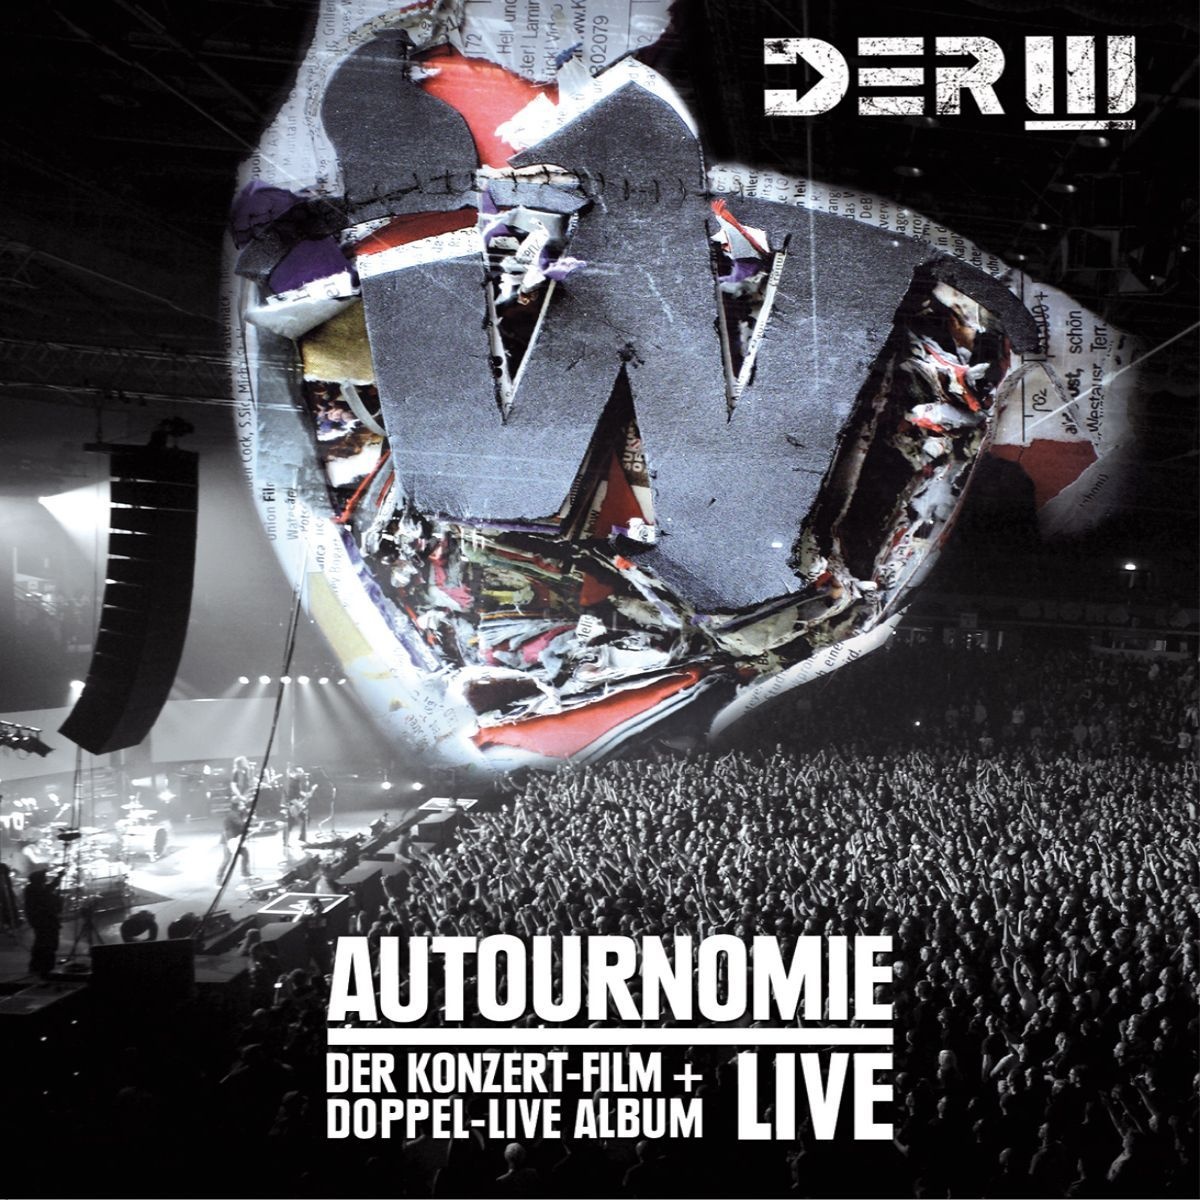 Autournomie - Live (Der Konzertfilm + Doppel-Live-Album) - Der W. (CD mit DVD)